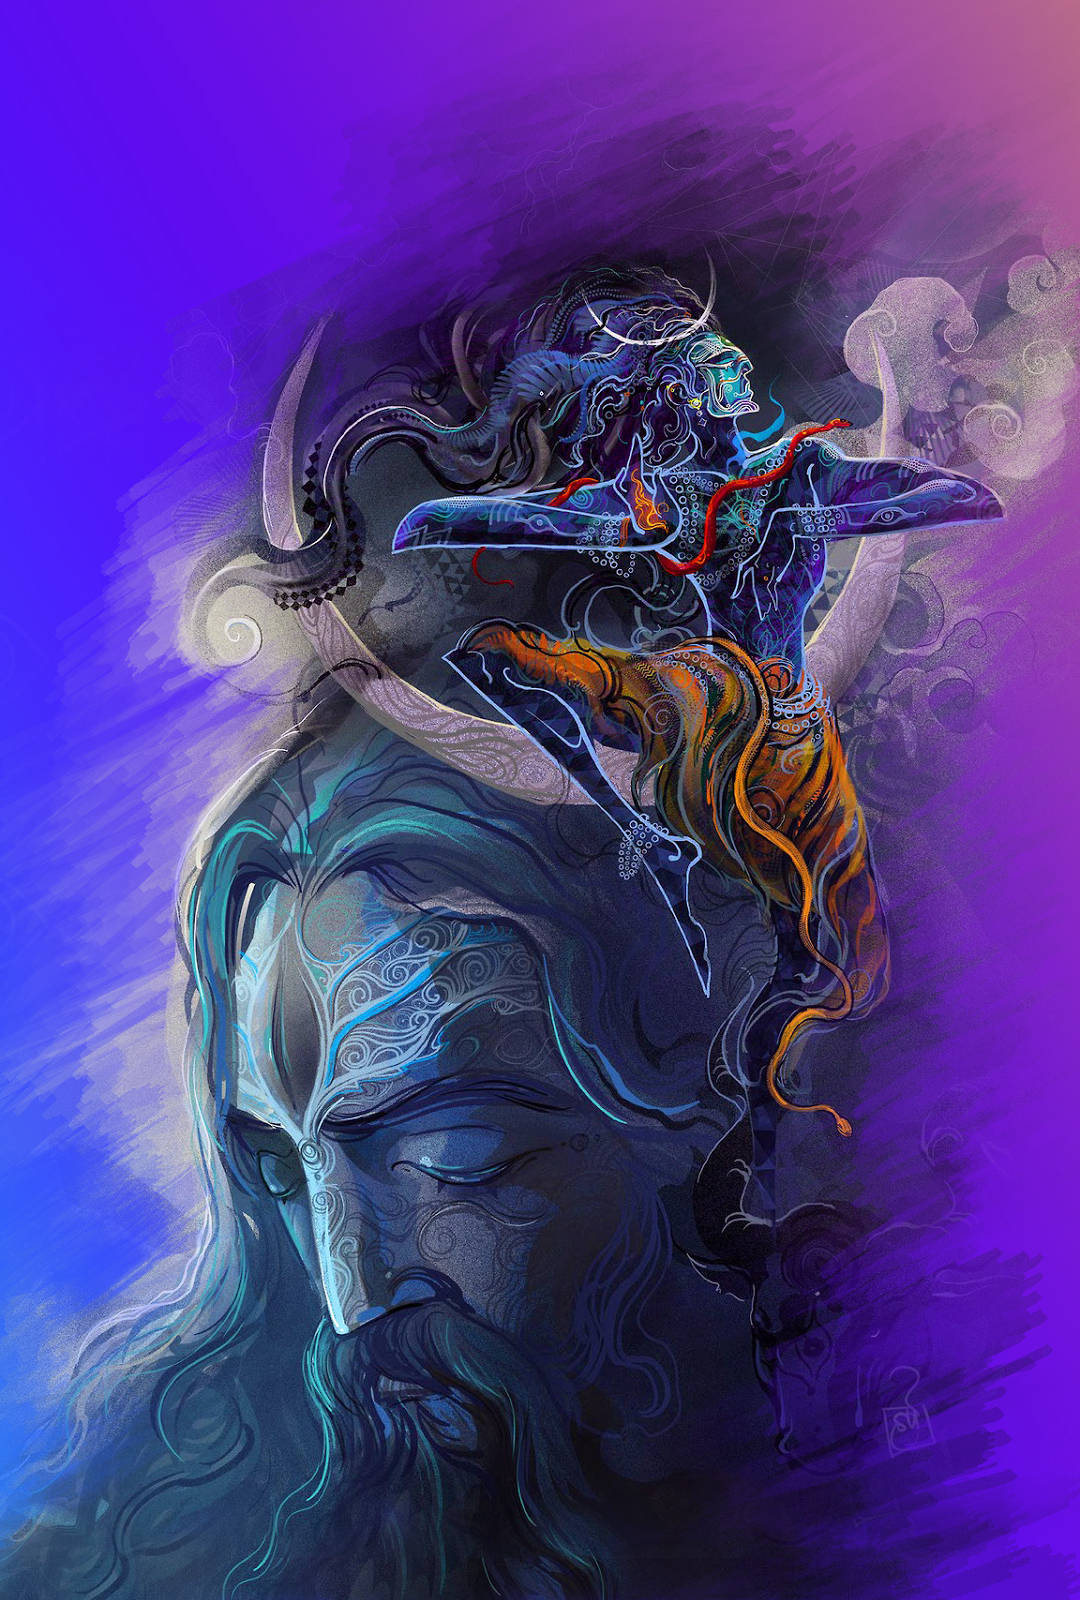 Shiva Iphone Painting On Purple Background Background